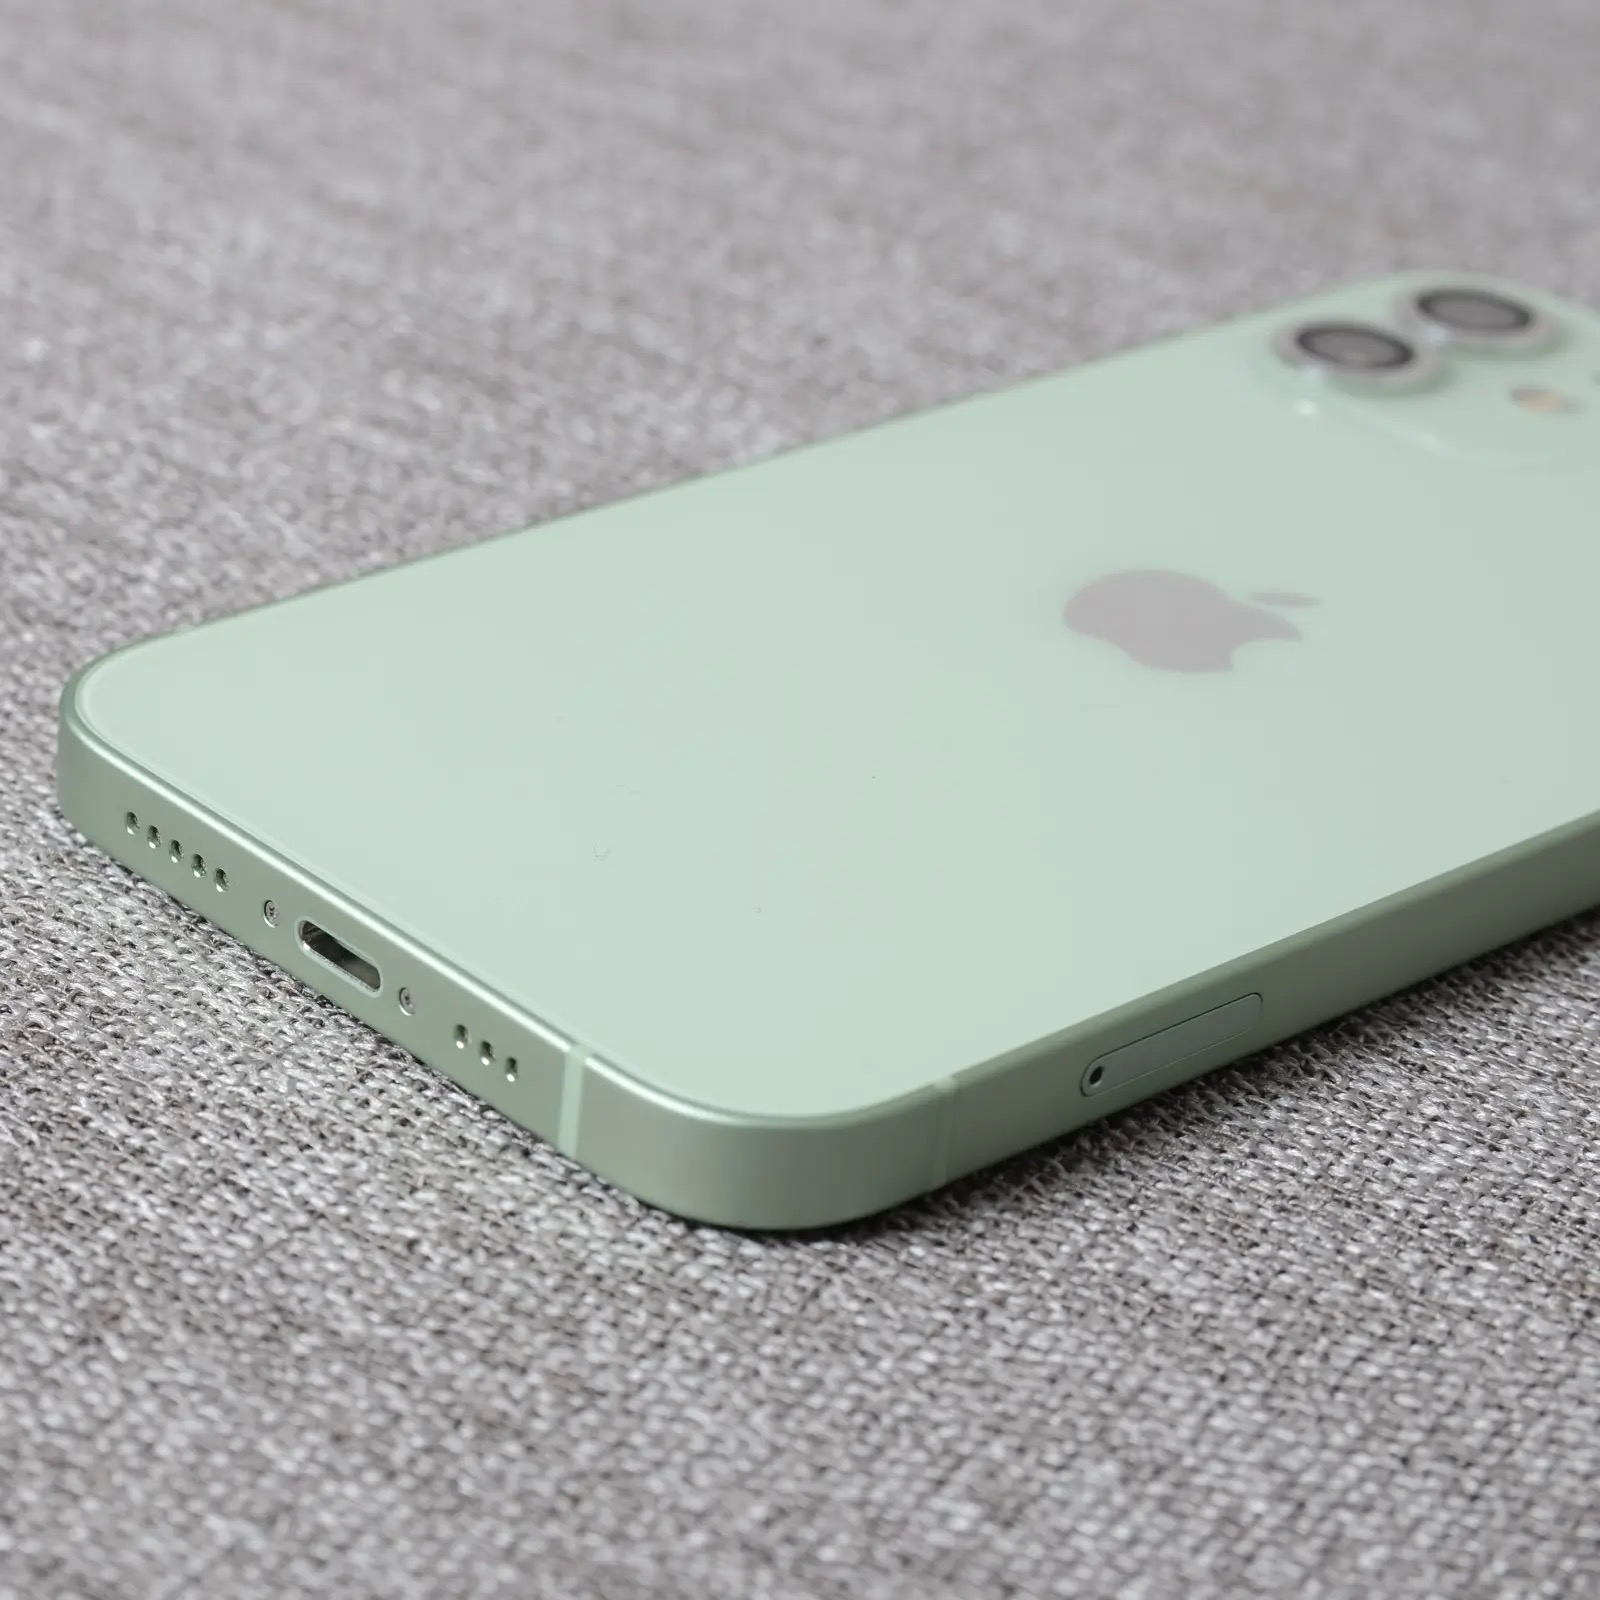 [多图]苍岭绿 iPhone 13 Pro 和绿色 iPhone 13 开箱图赏 - Apple iPhone - cnBeta.COM